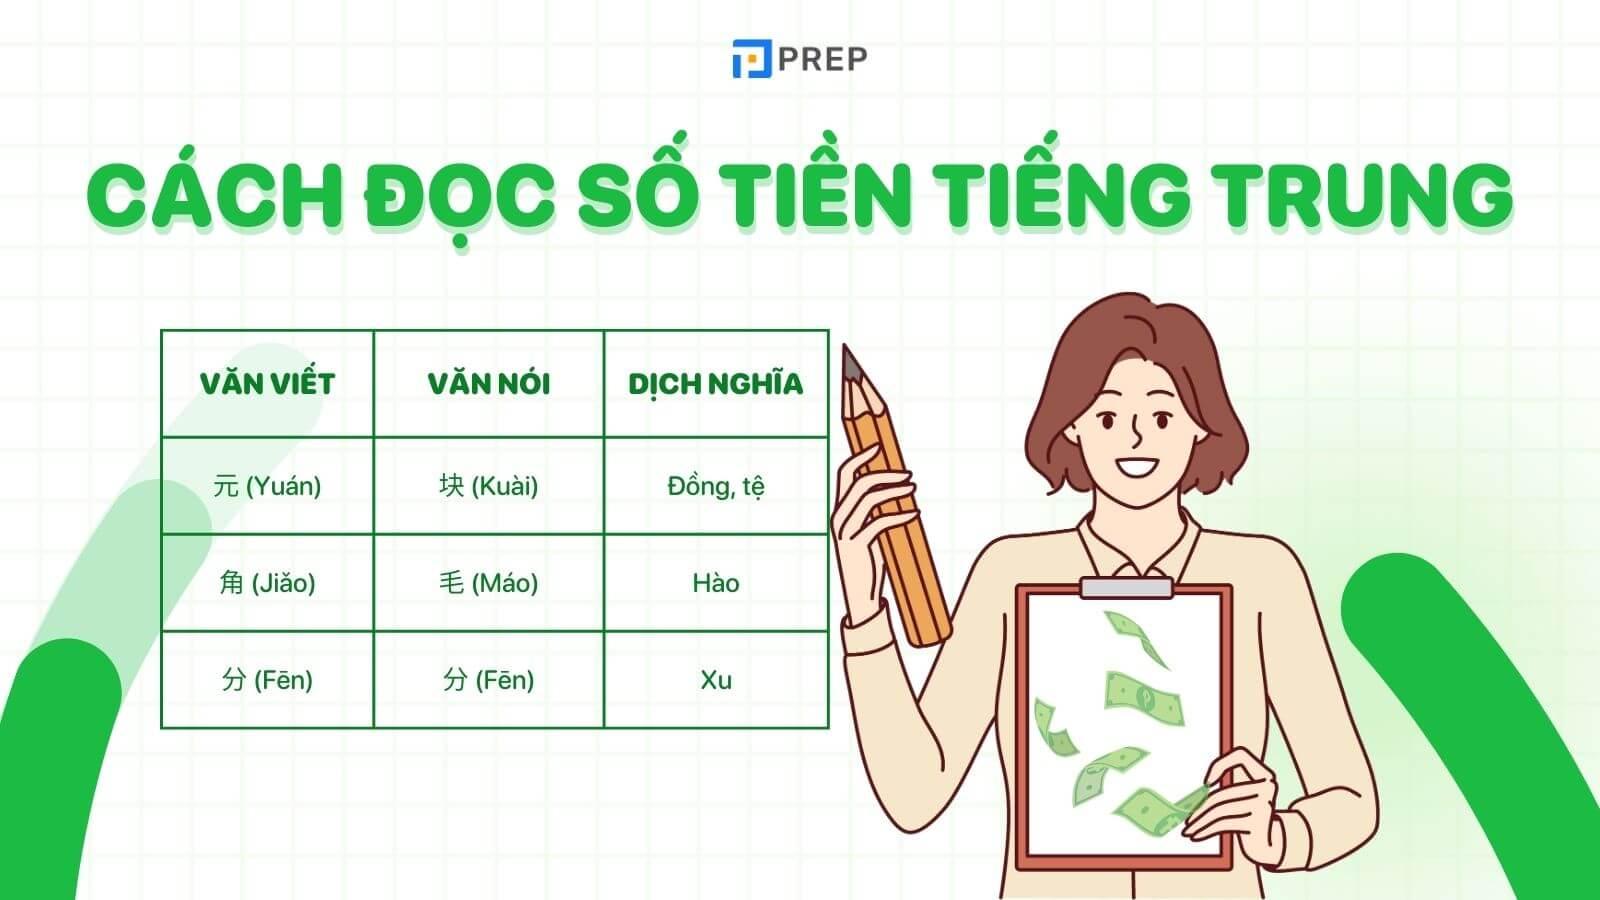 Học cách đọc số tiền trong tiếng Trung đầy đủ, chuẩn xác nhất!